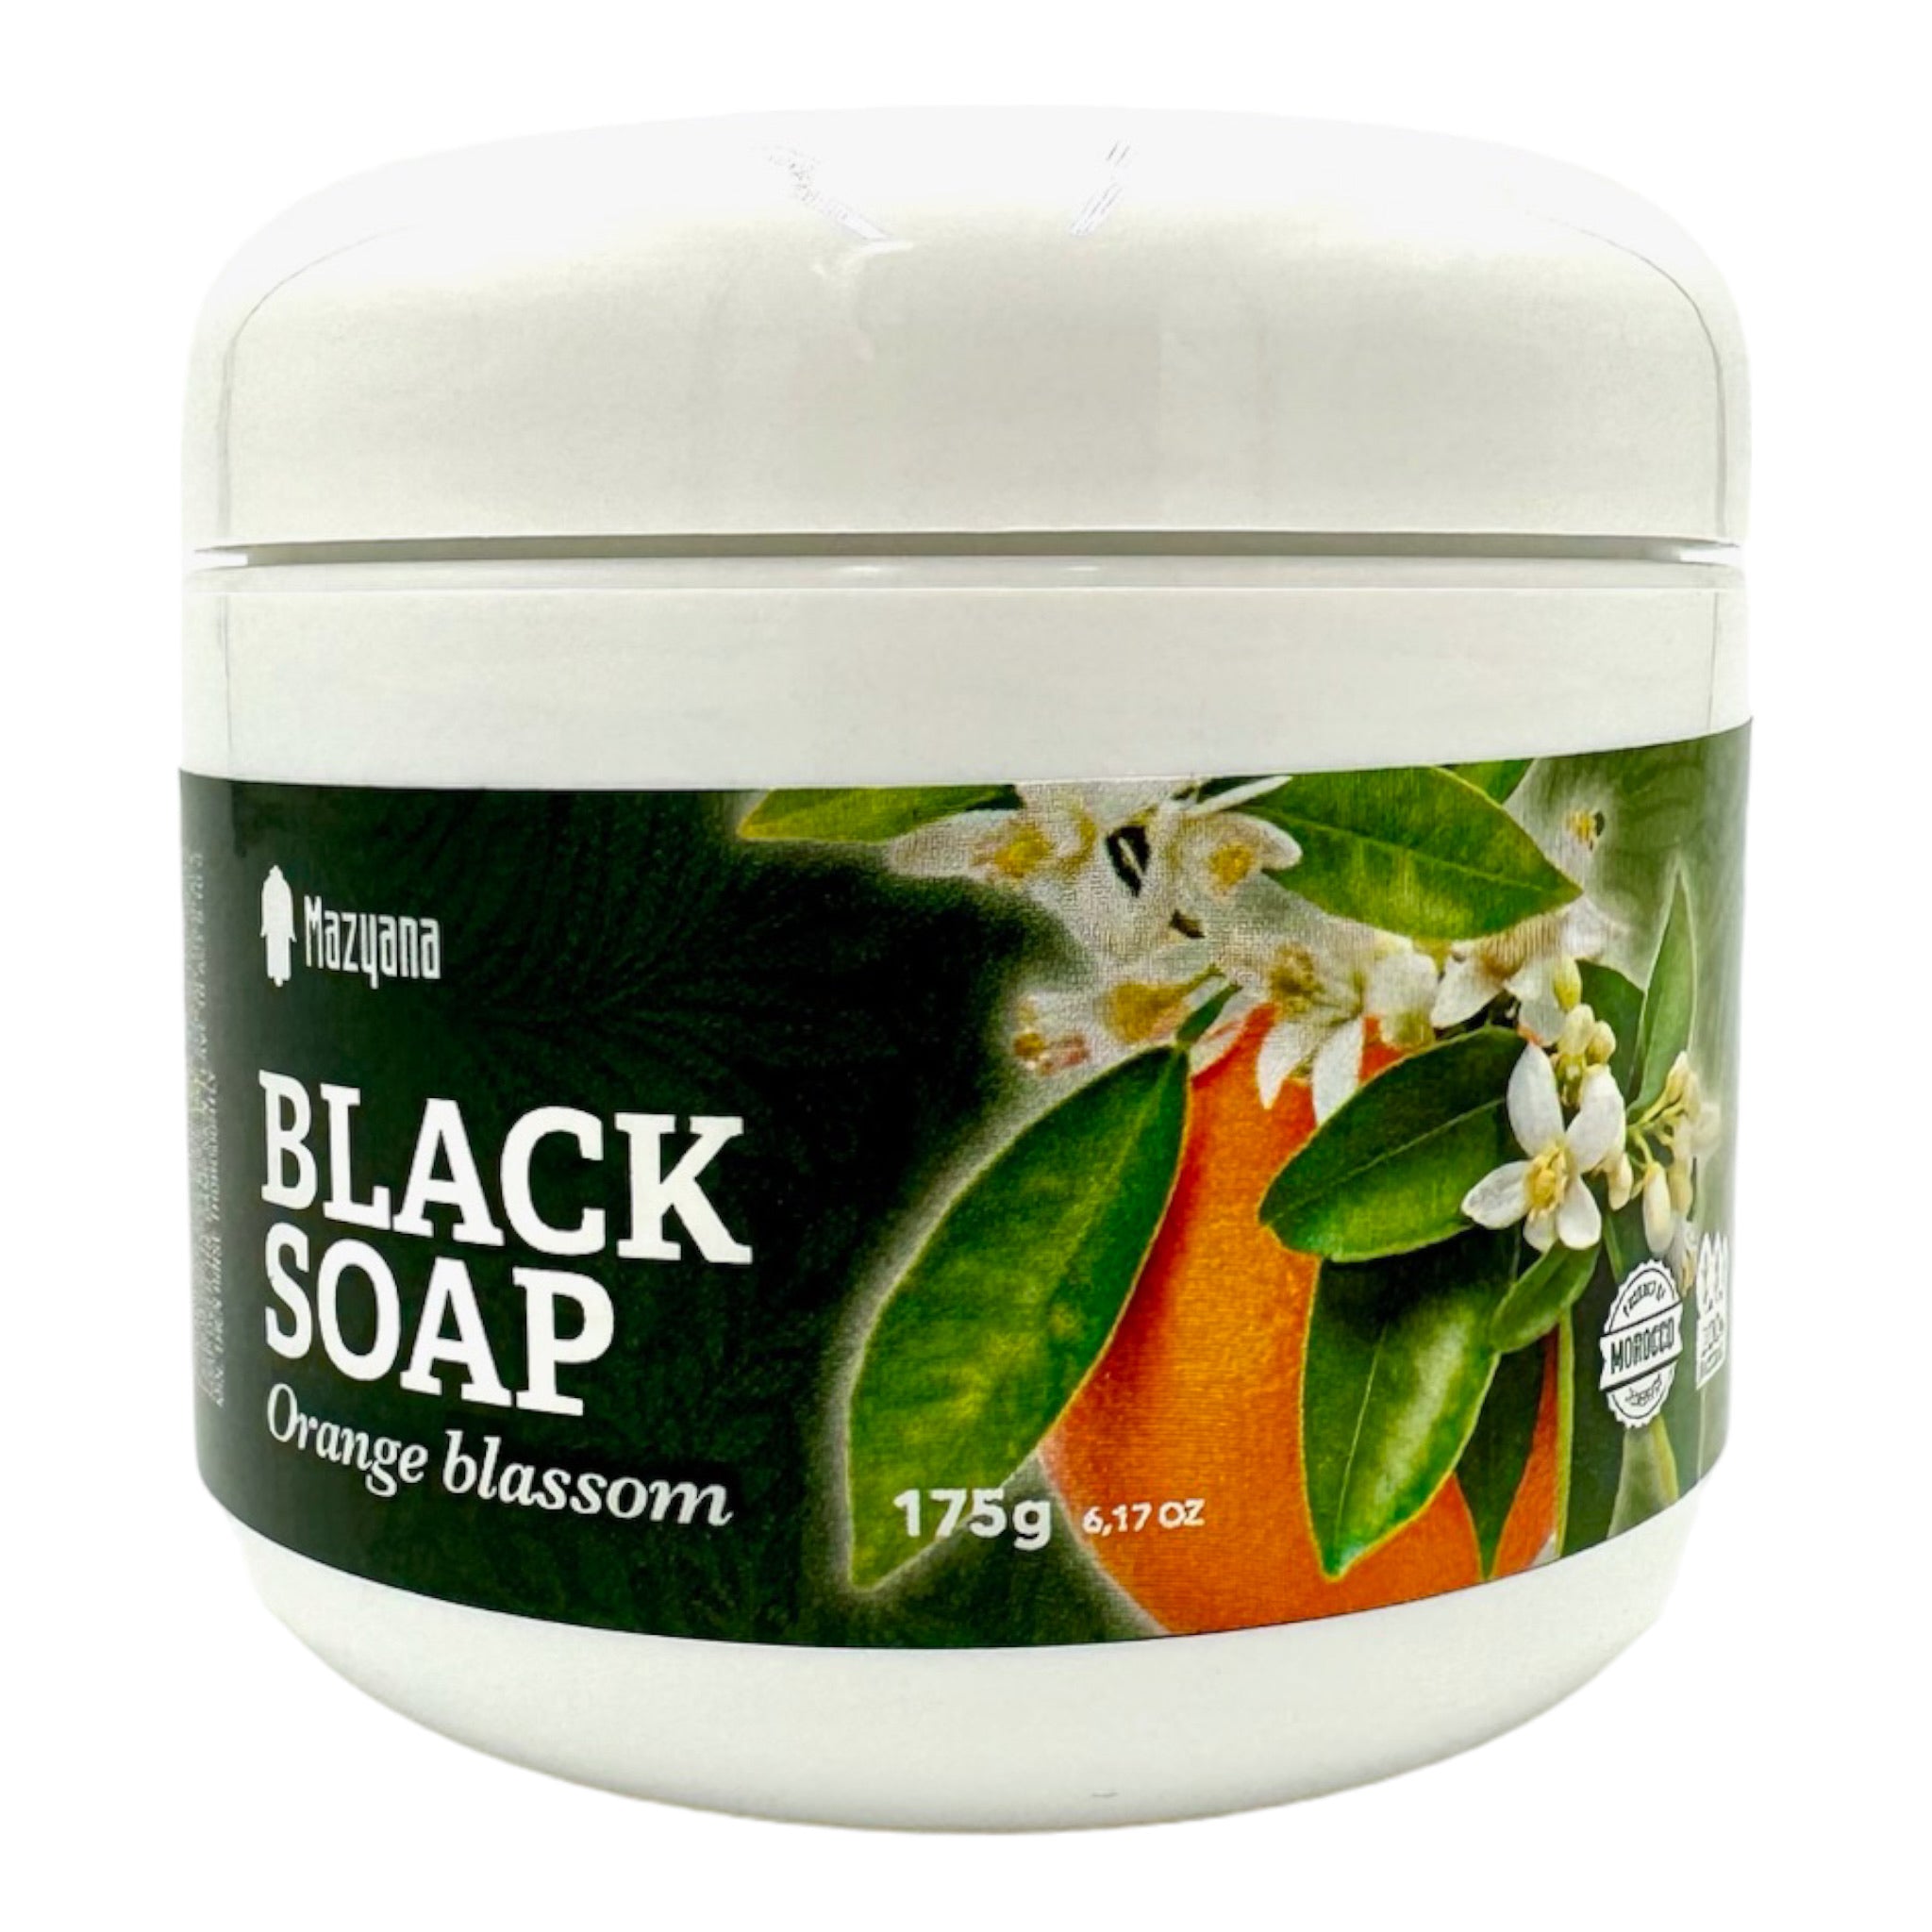 Moroccan Black Soap With Orange Blossom